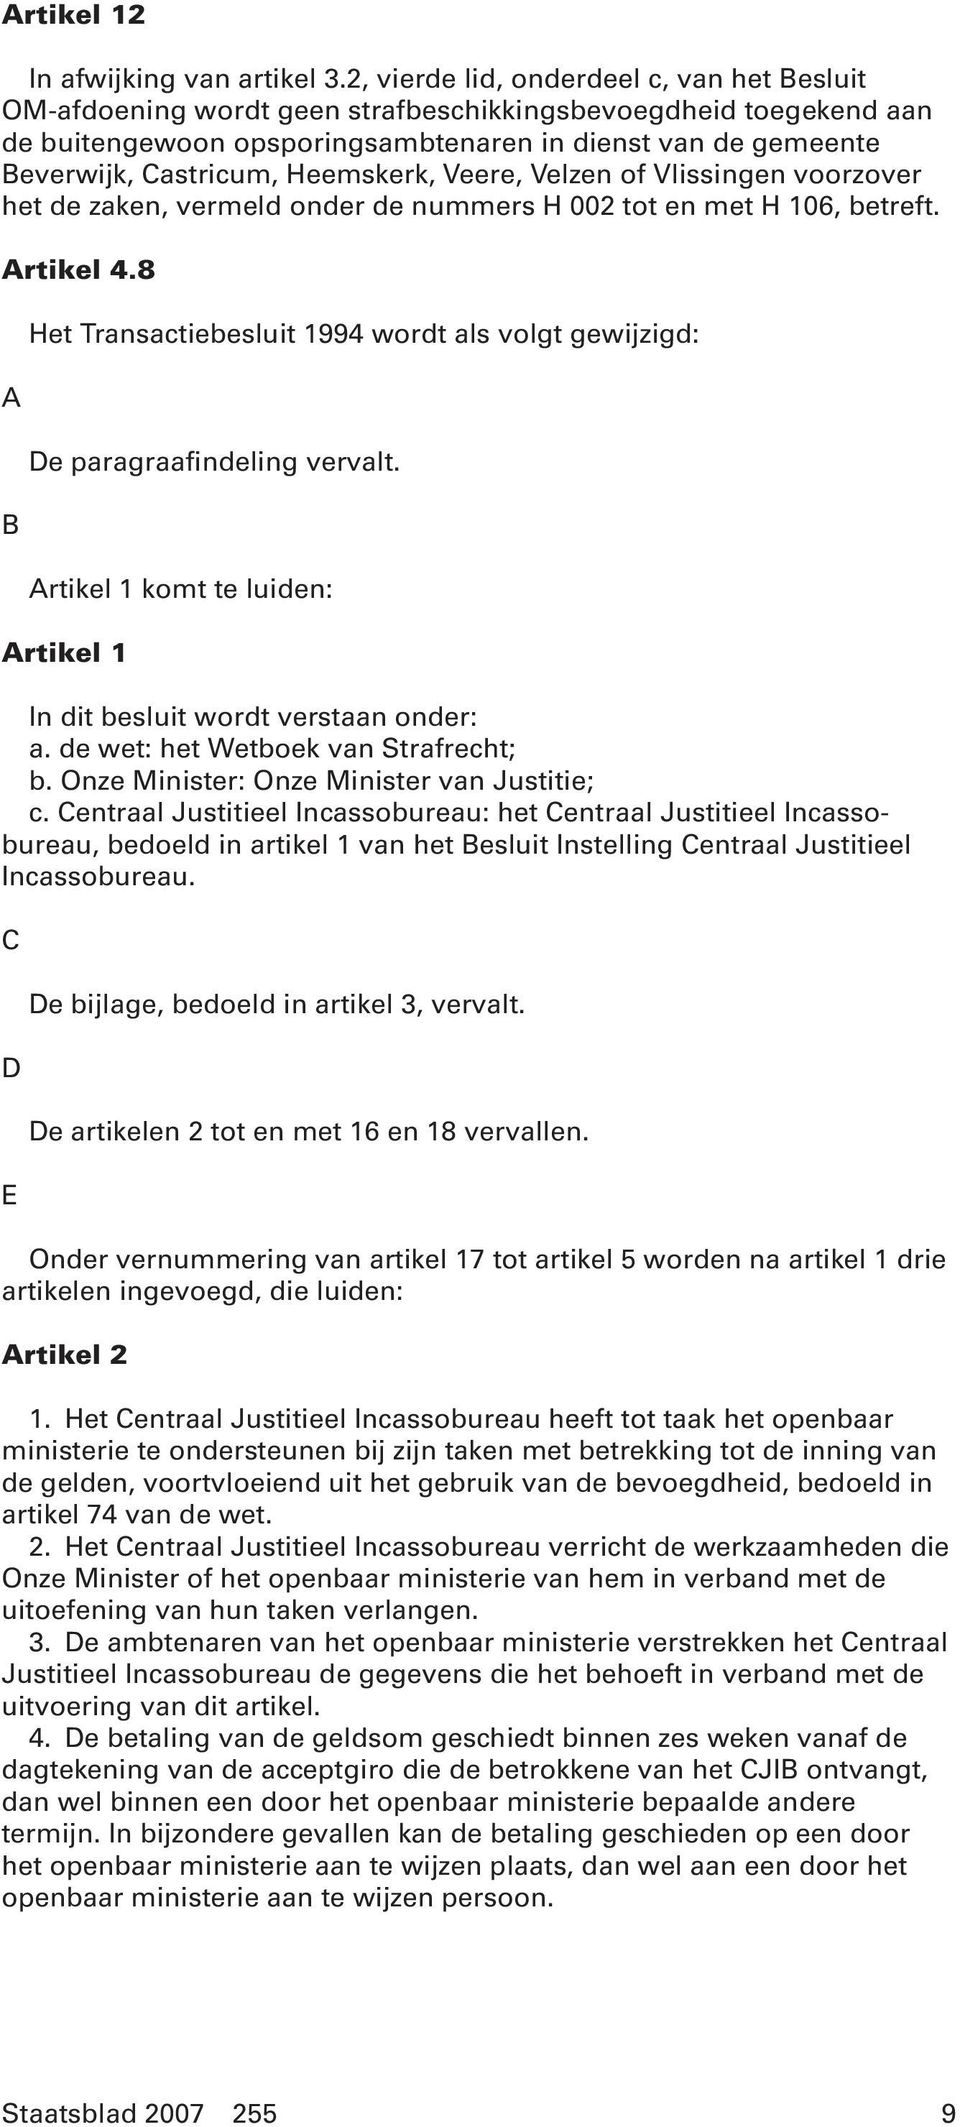 Heemskerk, Veere, Velzen of Vlissingen voorzover het de zaken, vermeld onder de nummers H 002 tot en met H 106, betreft. Artikel 4.